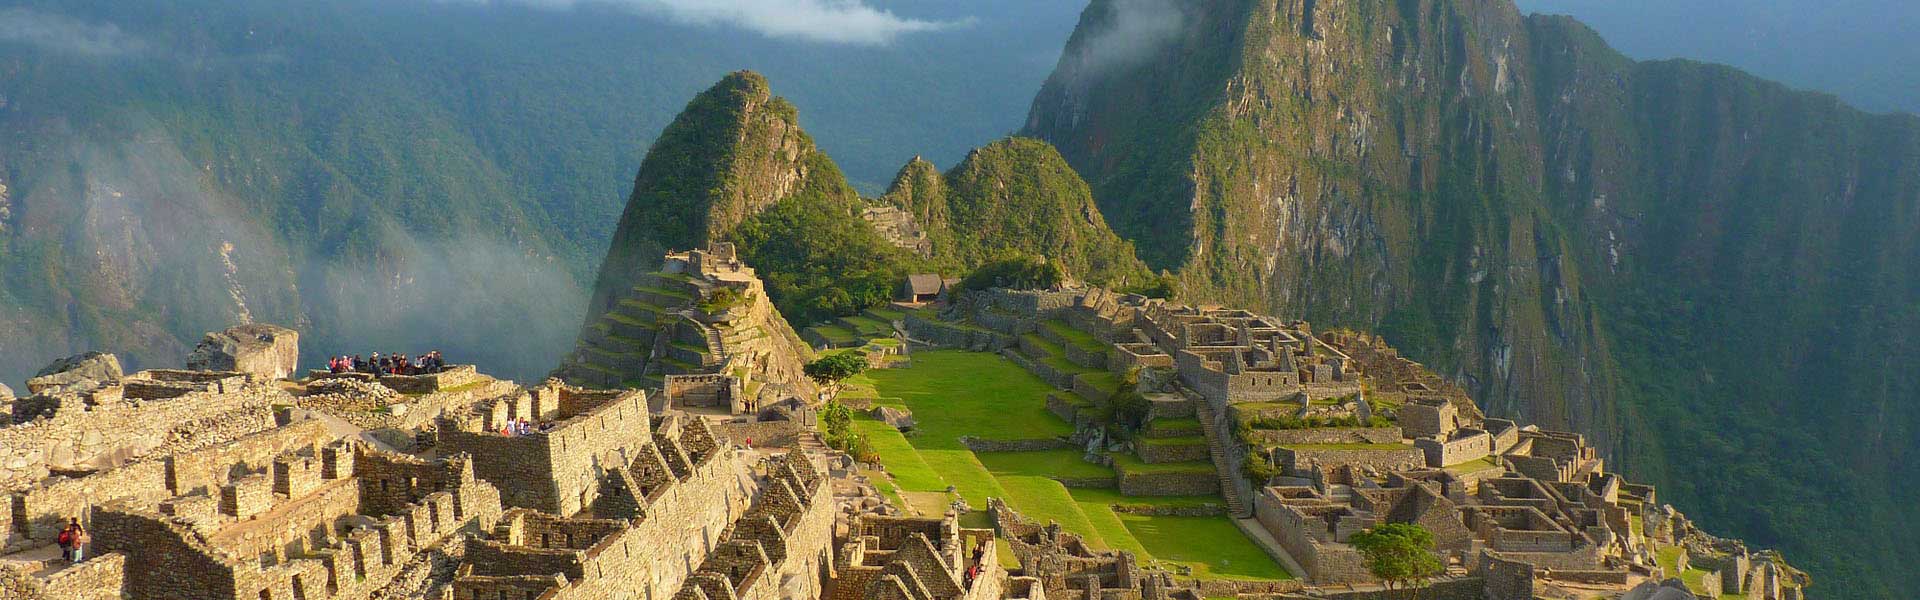 Voyage Pérou : Machu Picchu ancienne cité inca au Pérou